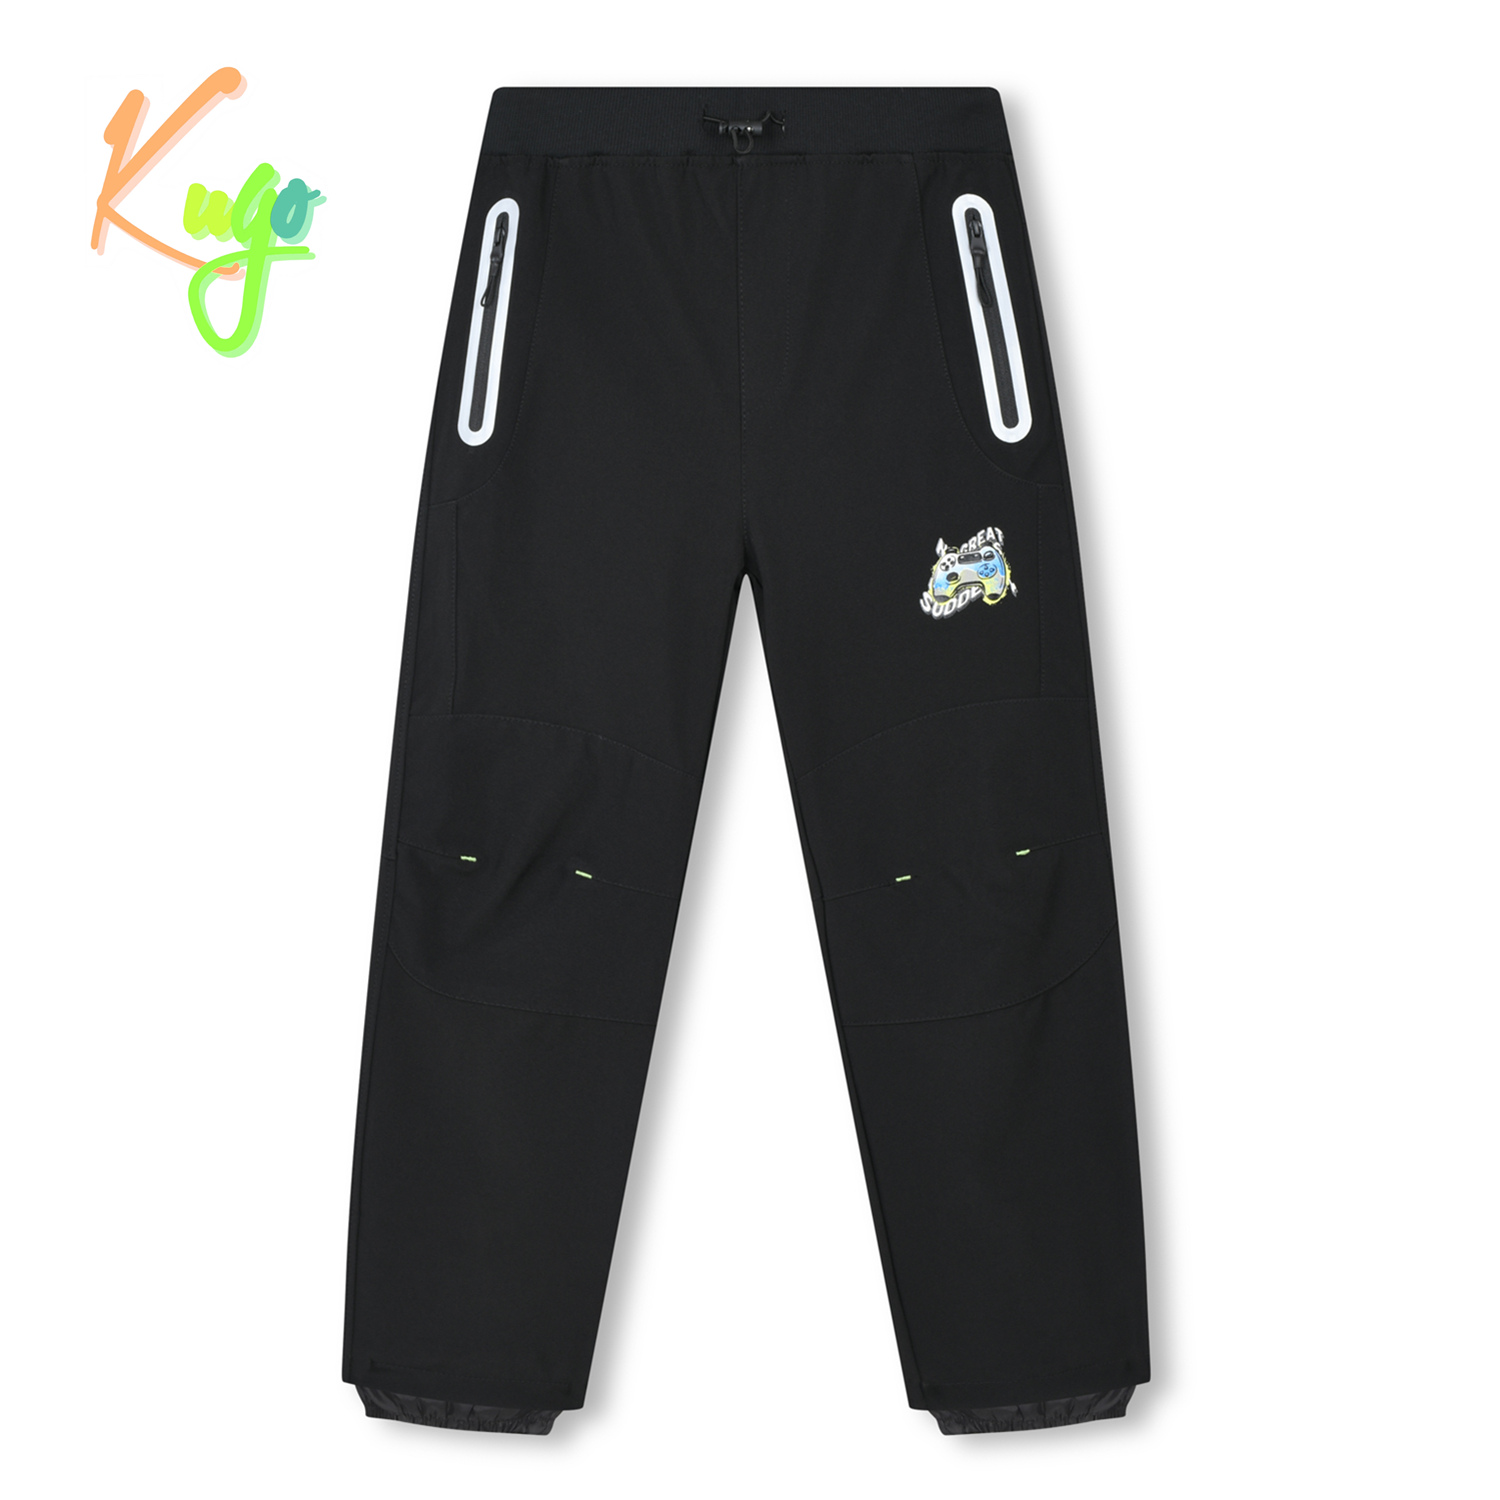 Chlapecké softshellové kalhoty - KUGO HK3118, celočerná Barva: Černá, Velikost: 134